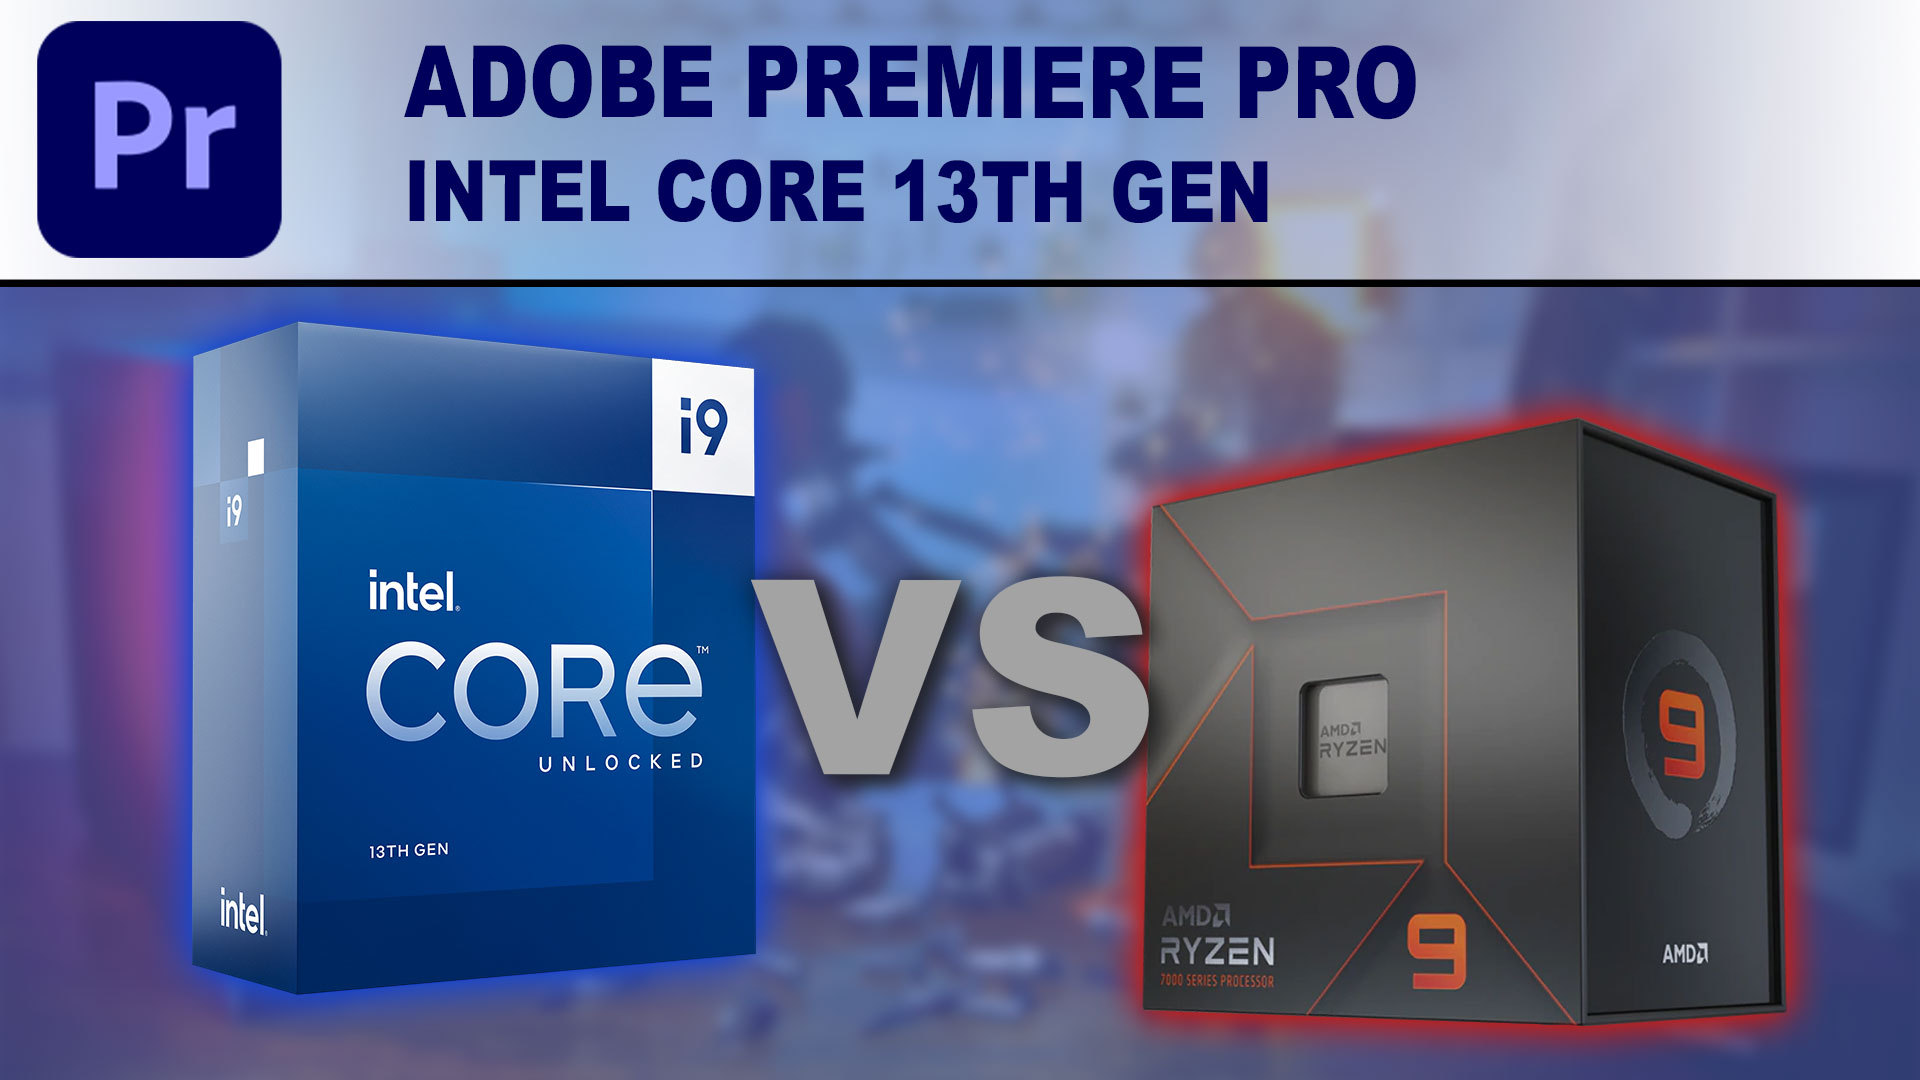 Adobe Premiere Pro: Intel Core 13th Gen vs AMD Ryzen 7000 Series